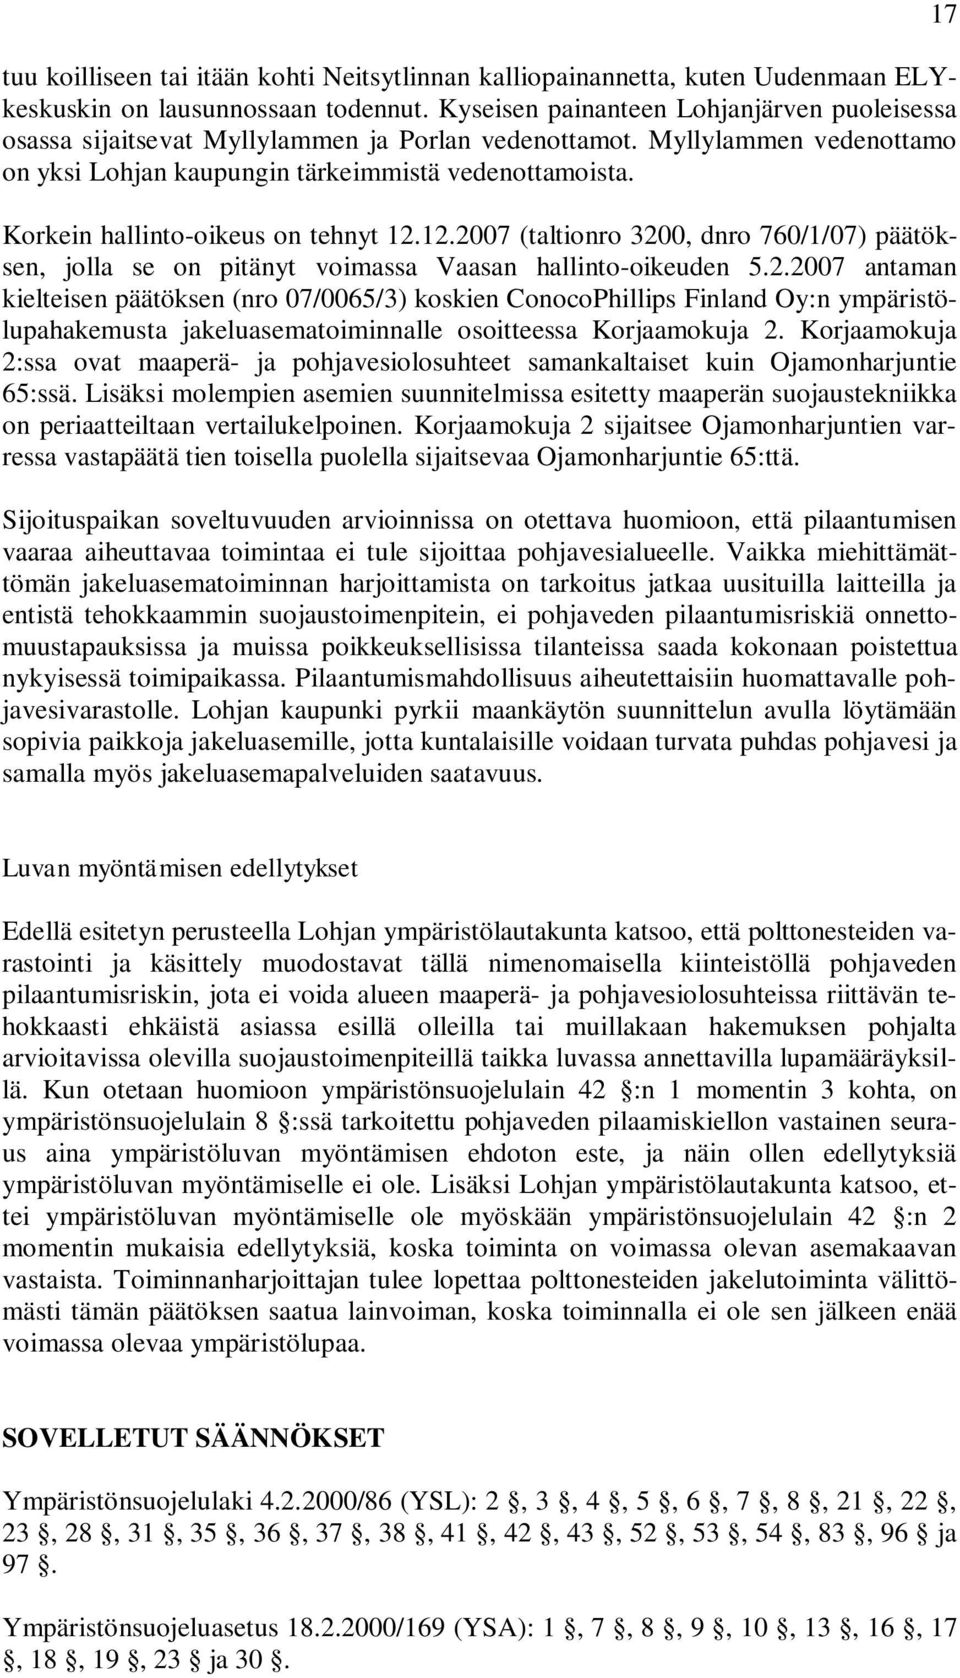 Korkein hallinto-oikeus on tehnyt 12.12.2007 (taltionro 3200, dnro 760/1/07) päätöksen, jolla se on pitänyt voimassa Vaasan hallinto-oikeuden 5.2.2007 antaman kielteisen päätöksen (nro 07/0065/3) koskien ConocoPhillips Finland Oy:n ympäristölupahakemusta jakeluasematoiminnalle osoitteessa Korjaamokuja 2.